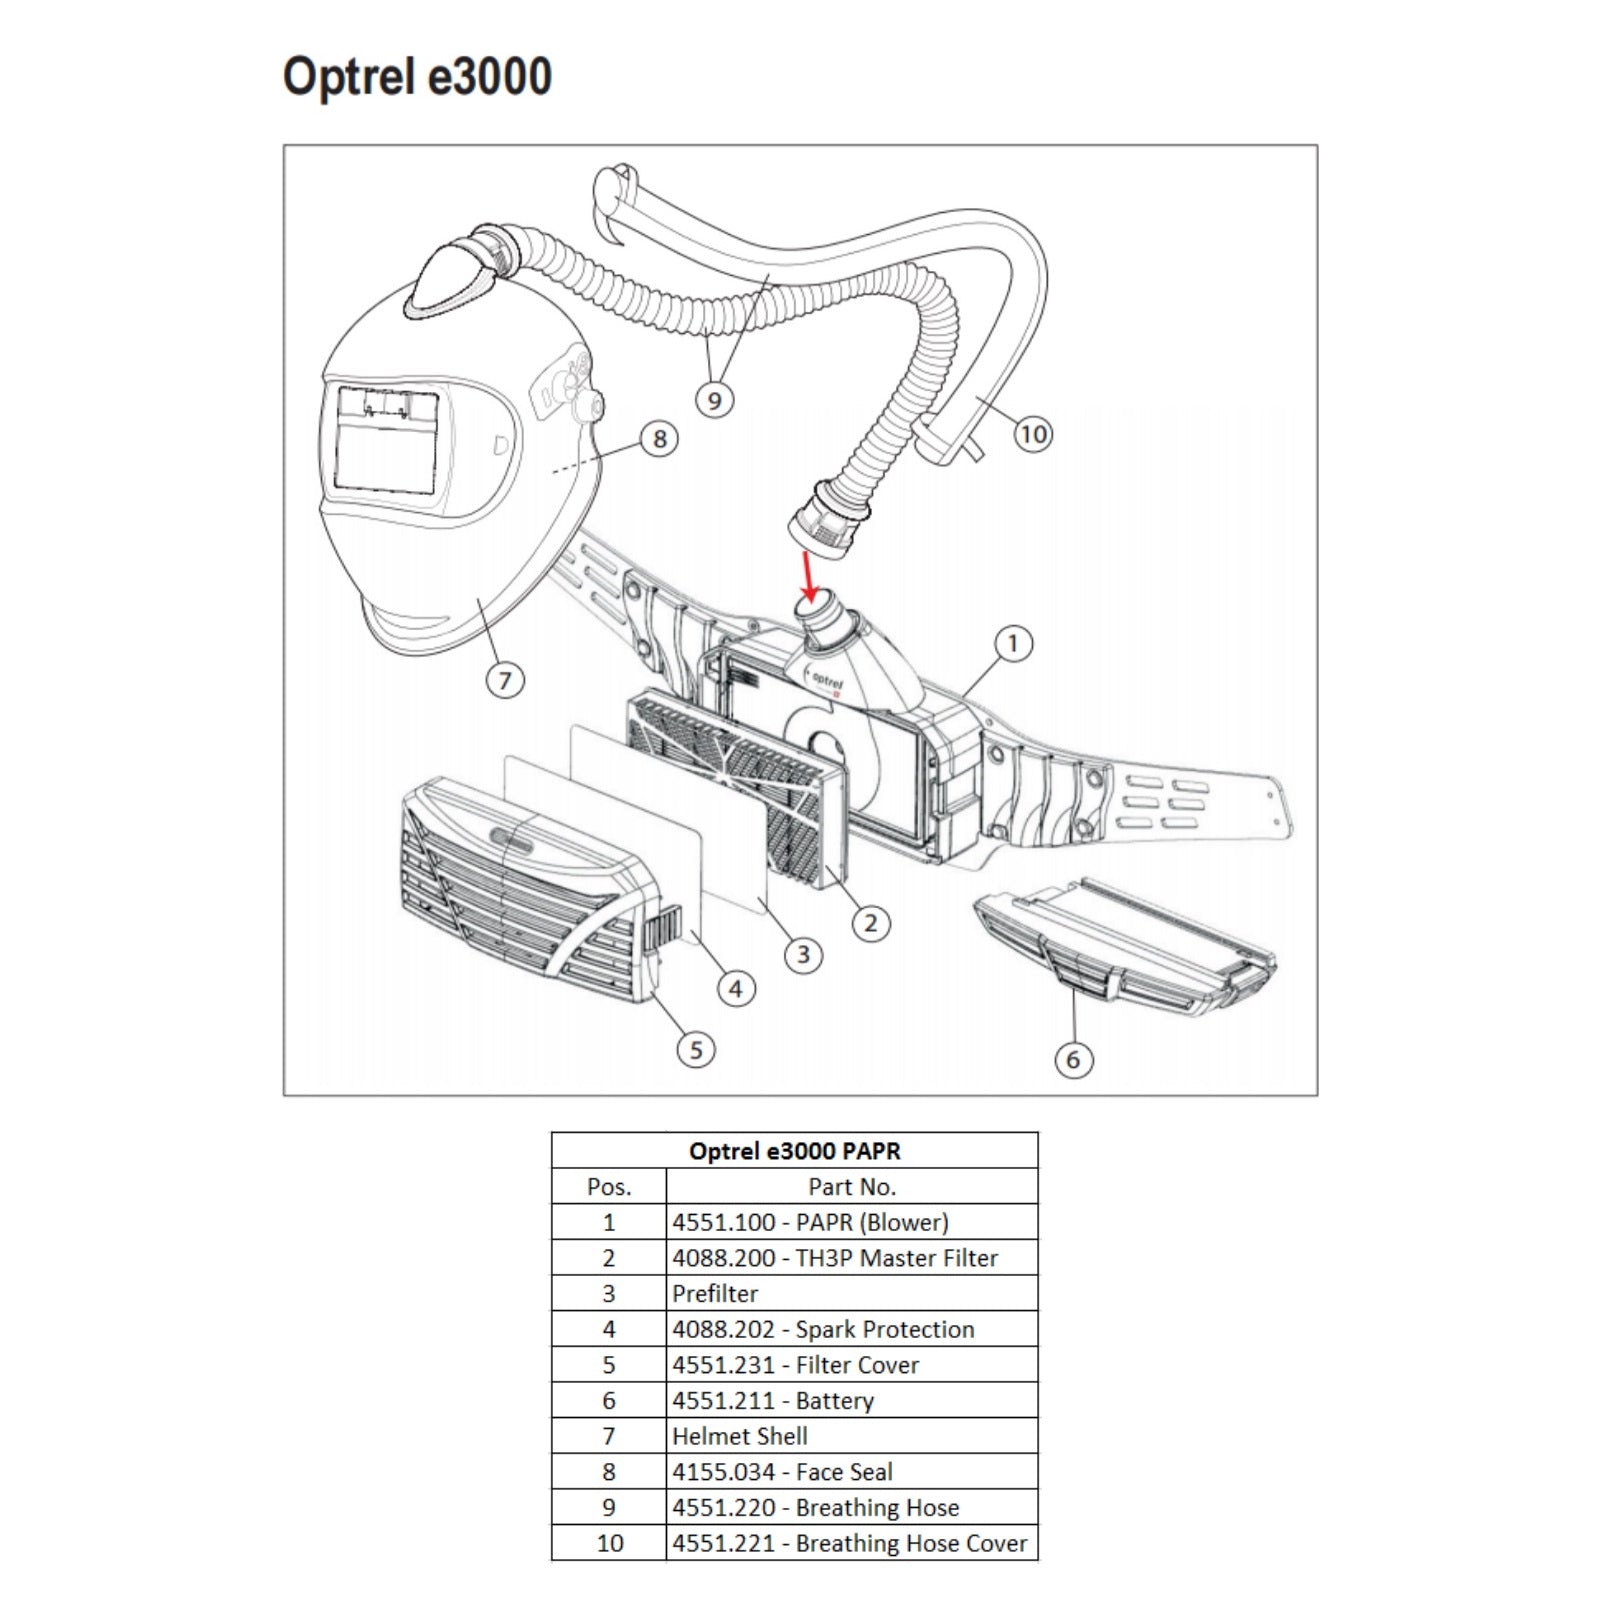 Optrel e3000 PAPR Breathing Hose Cover (4551.221)